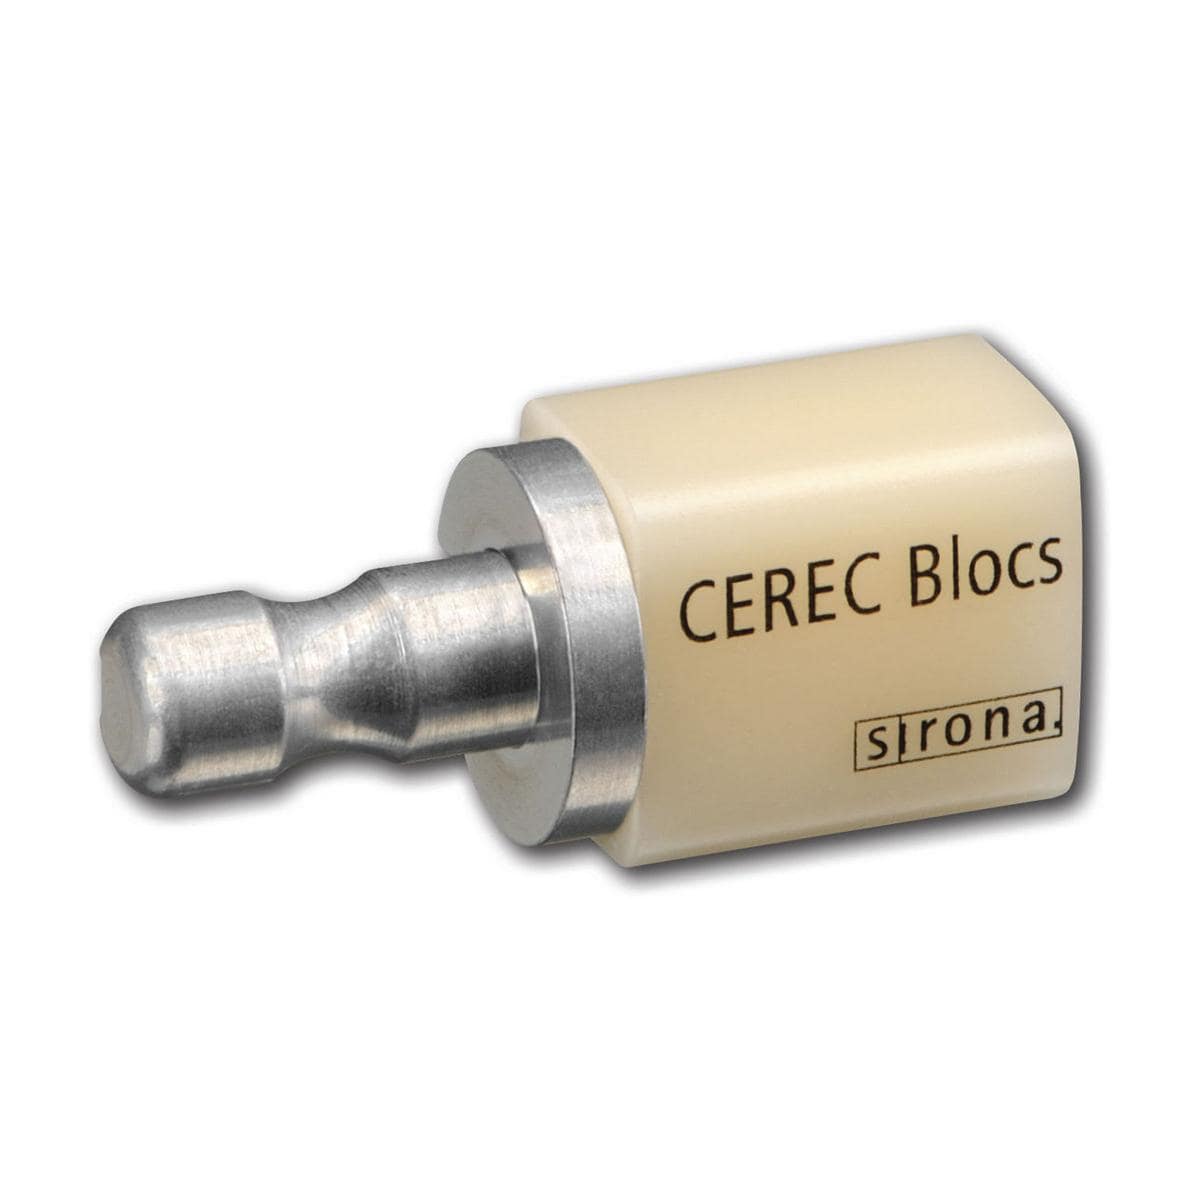 CEREC Blocs C 14 - A4C, Packung 8 Stück